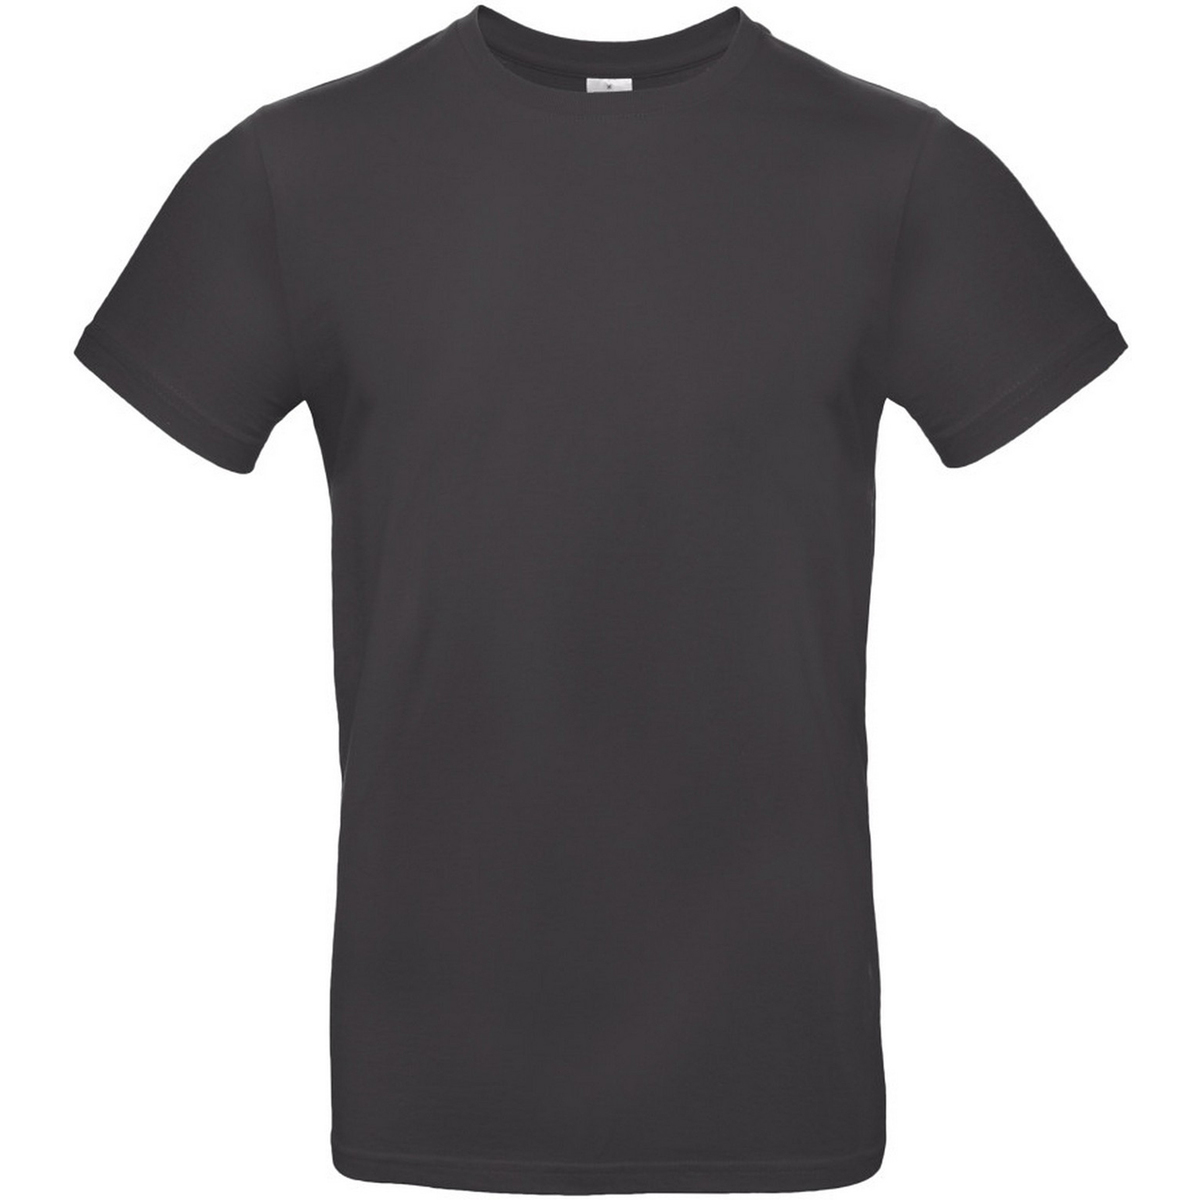 Vêtements Homme T-shirts cotton manches longues B And C TU03T Noir